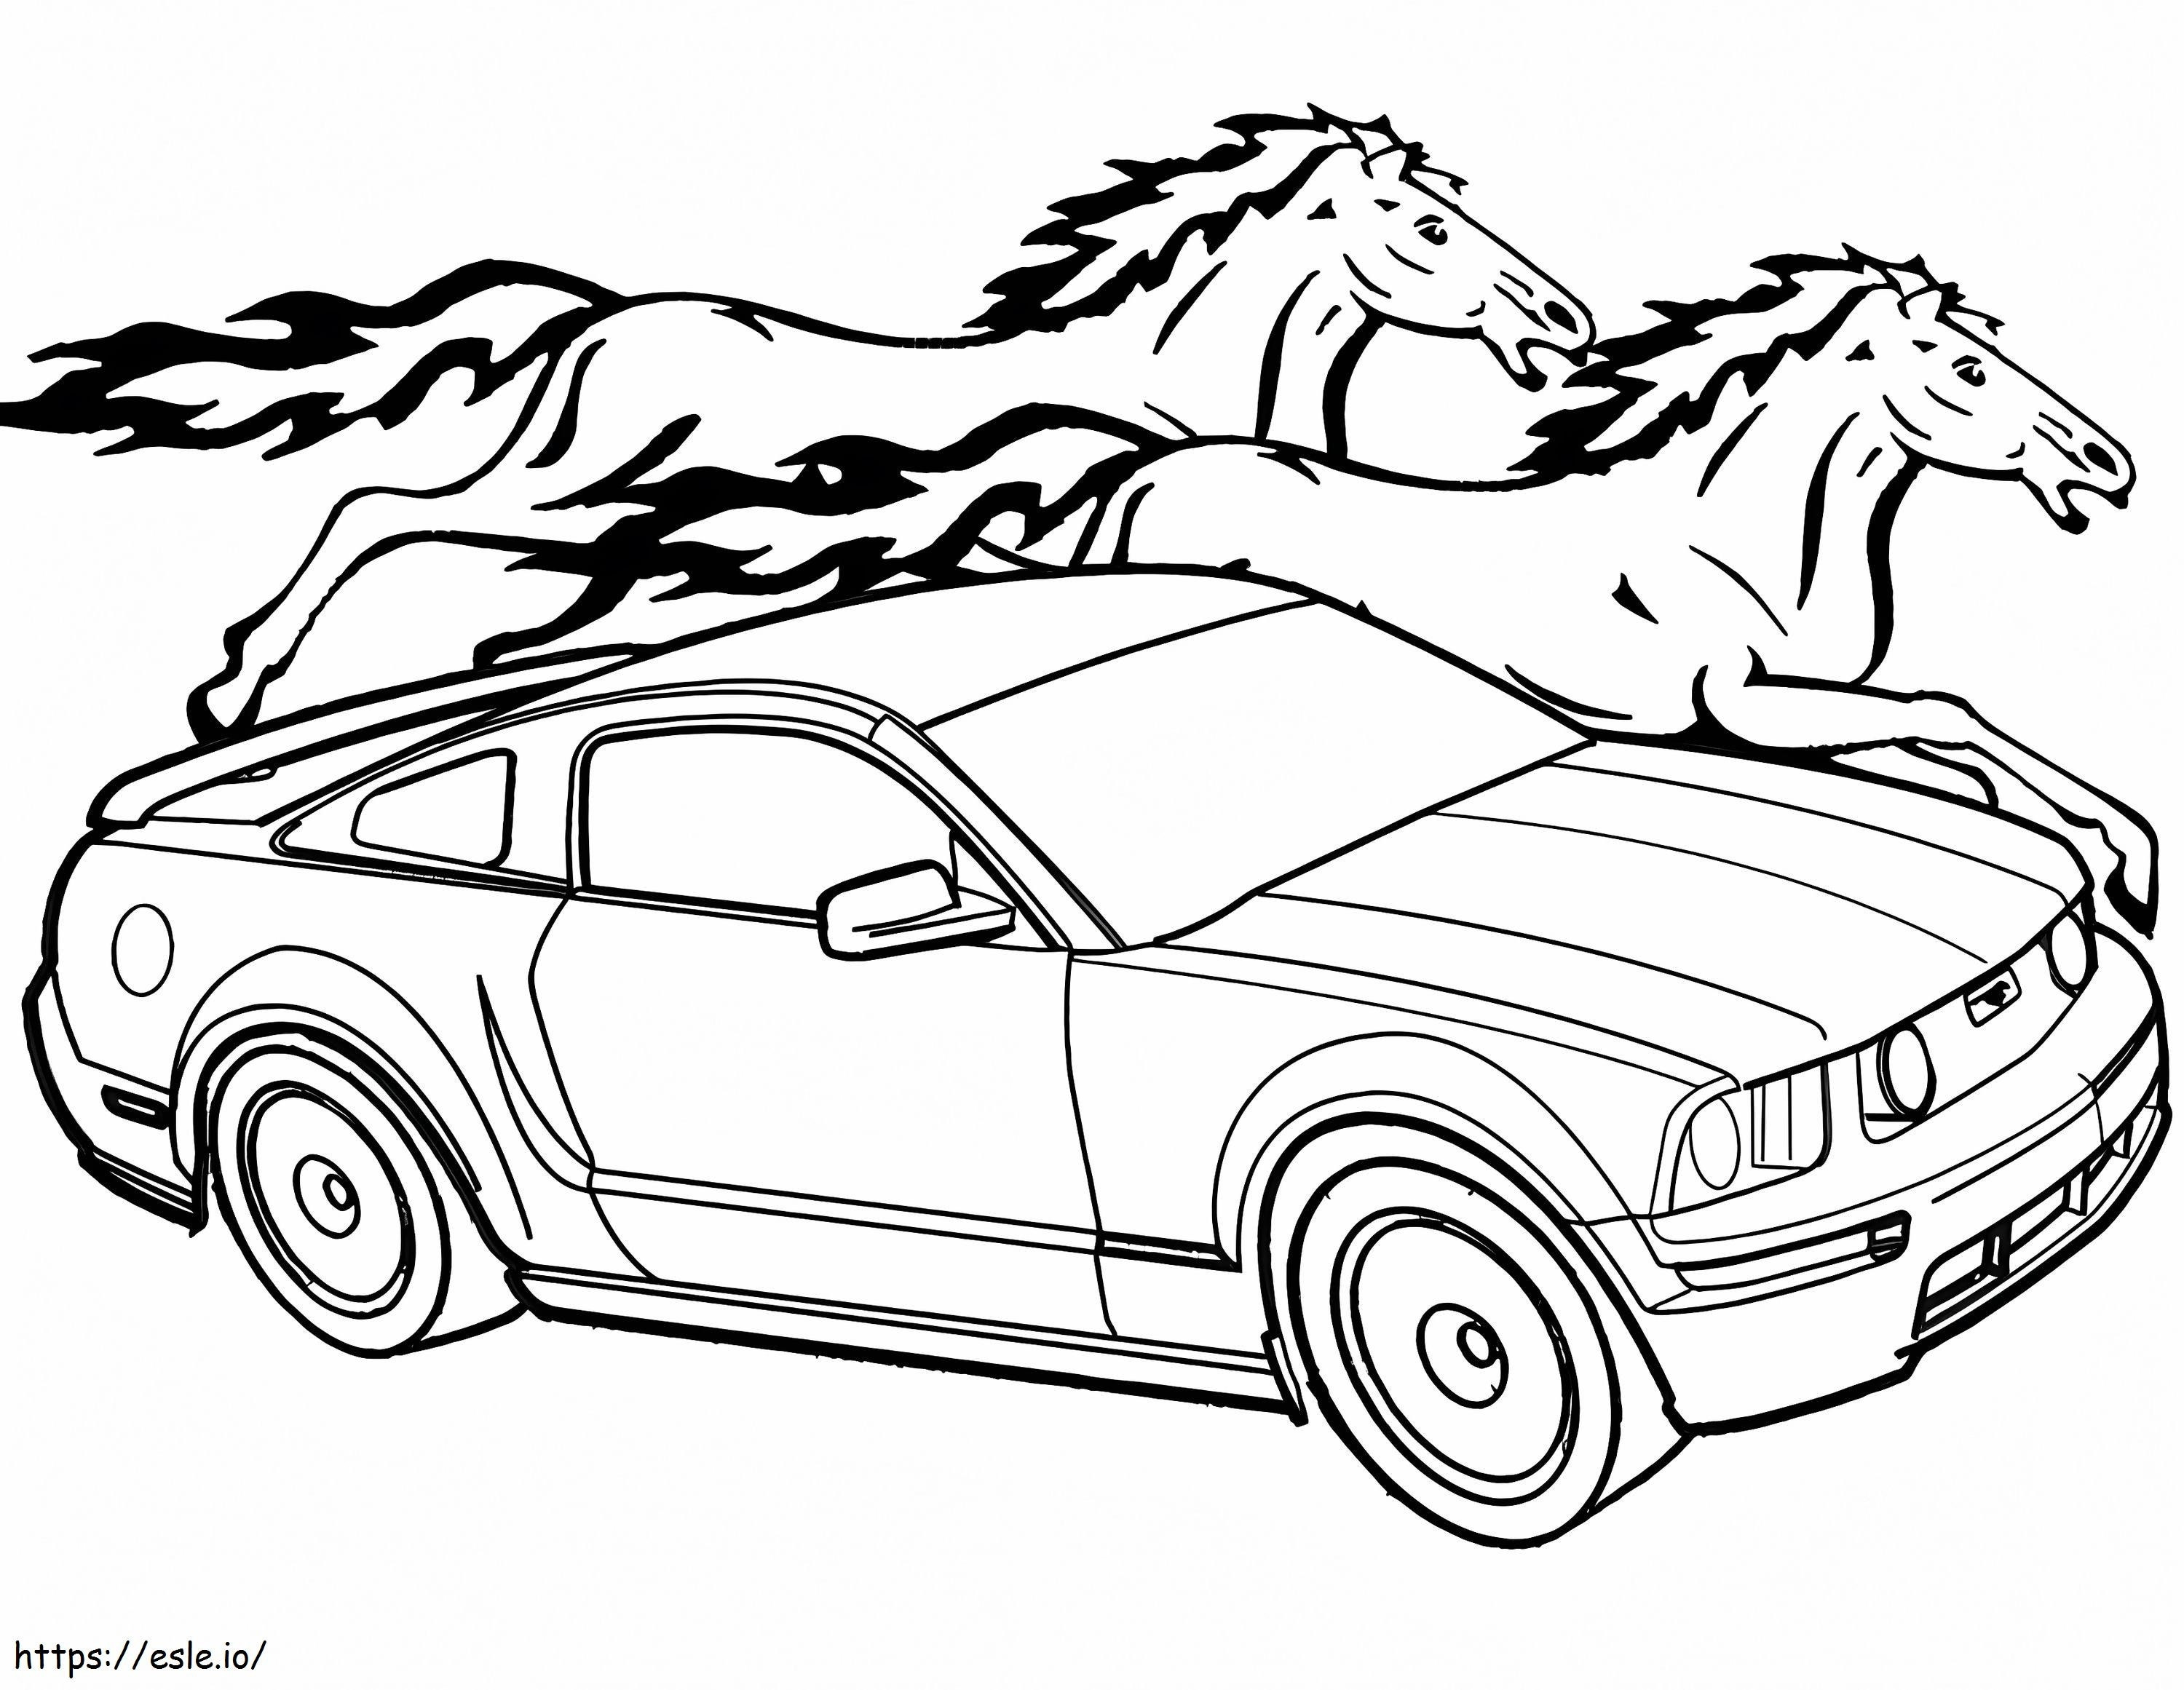 Samochód Mustang kolorowanka